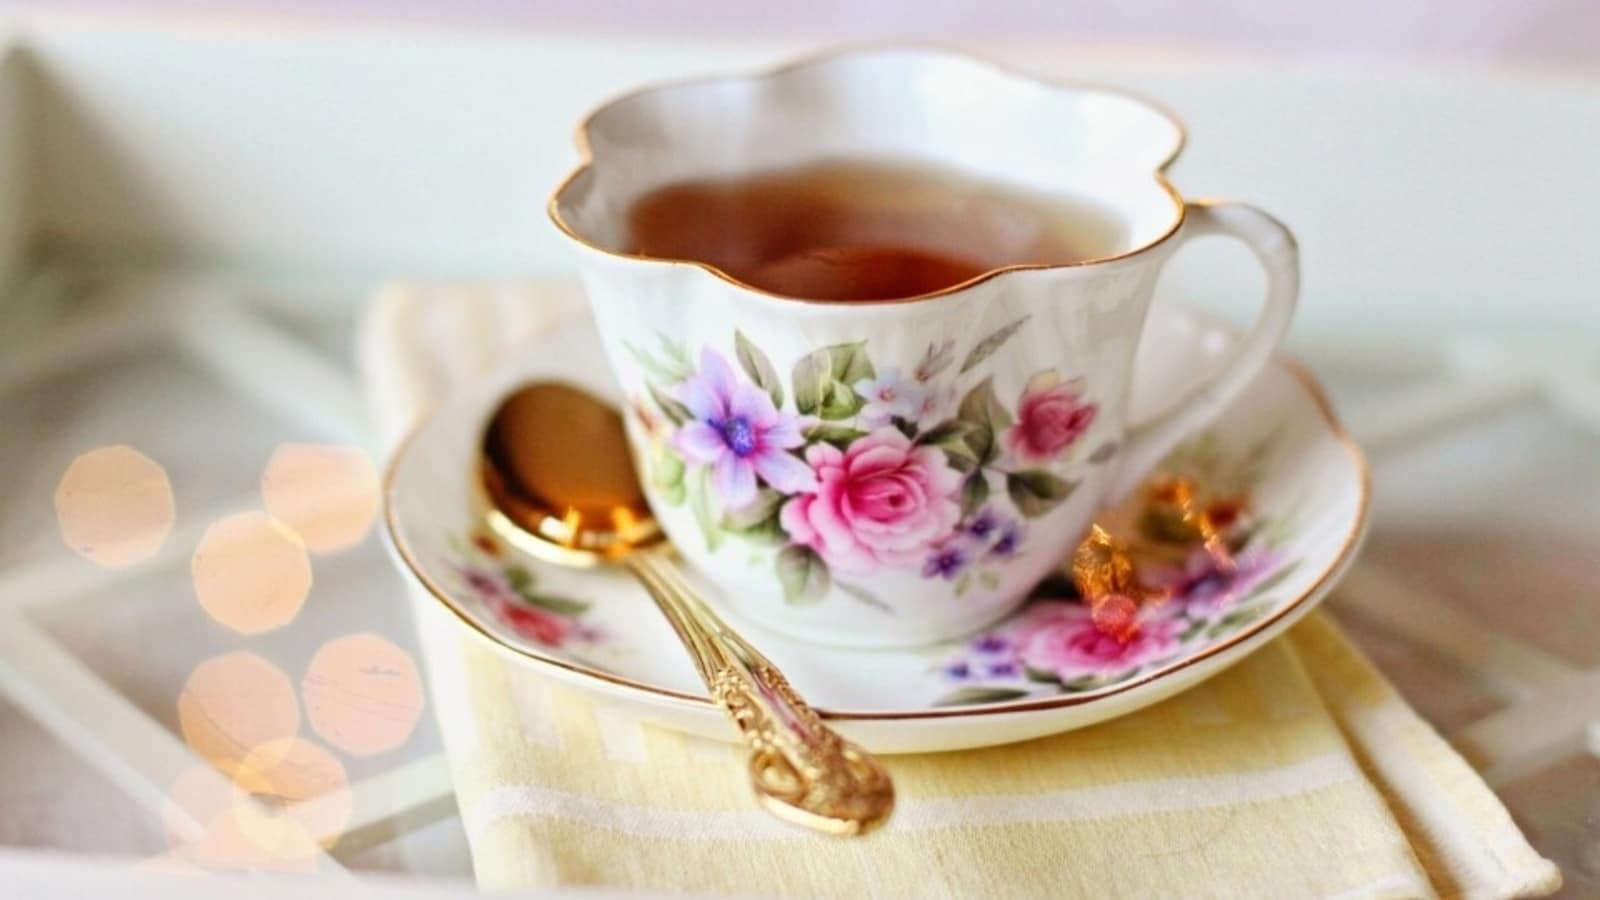 अमेरिकी वैज्ञानिक ने ब्रिटेन को चाय बनाने में नमक मिलाने की सलाह देकर हंगामा खड़ा कर दिया